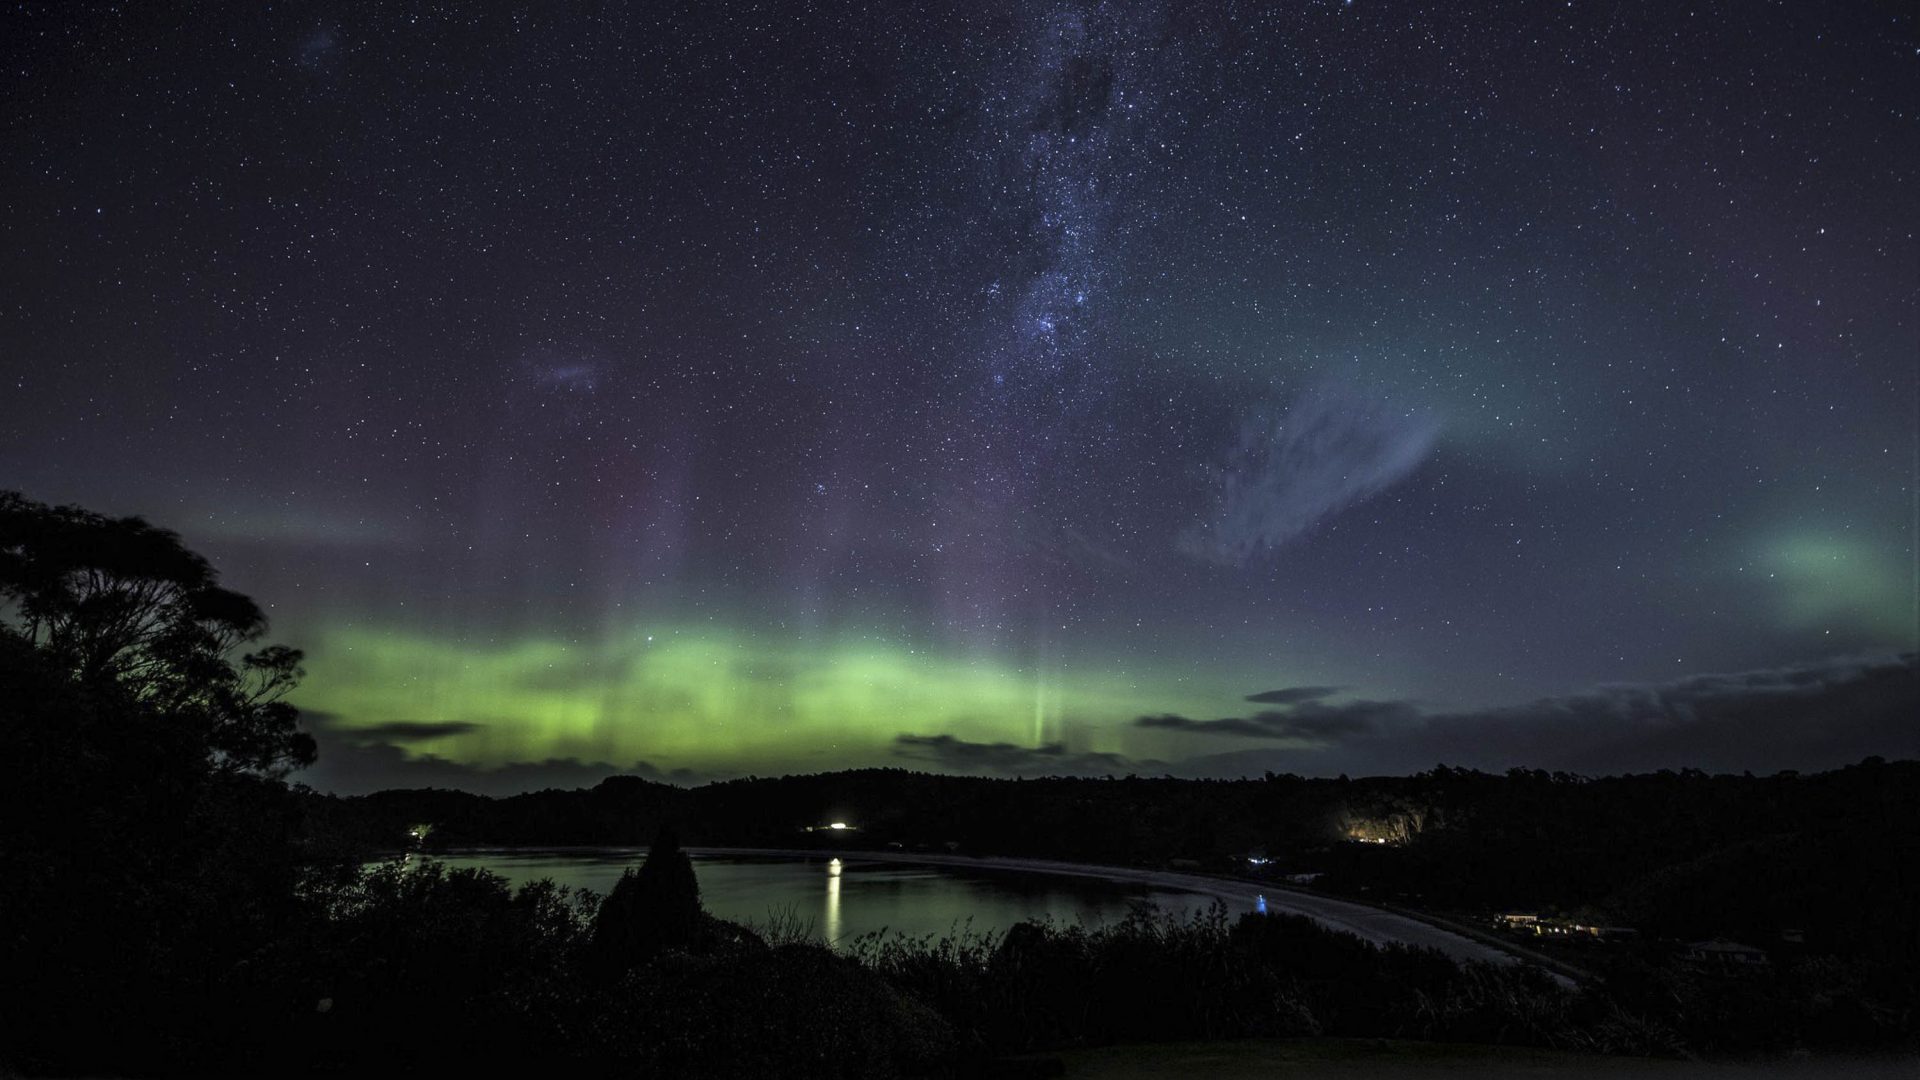 Aurora borealis in the sky above Rakiura makes the night sky green.